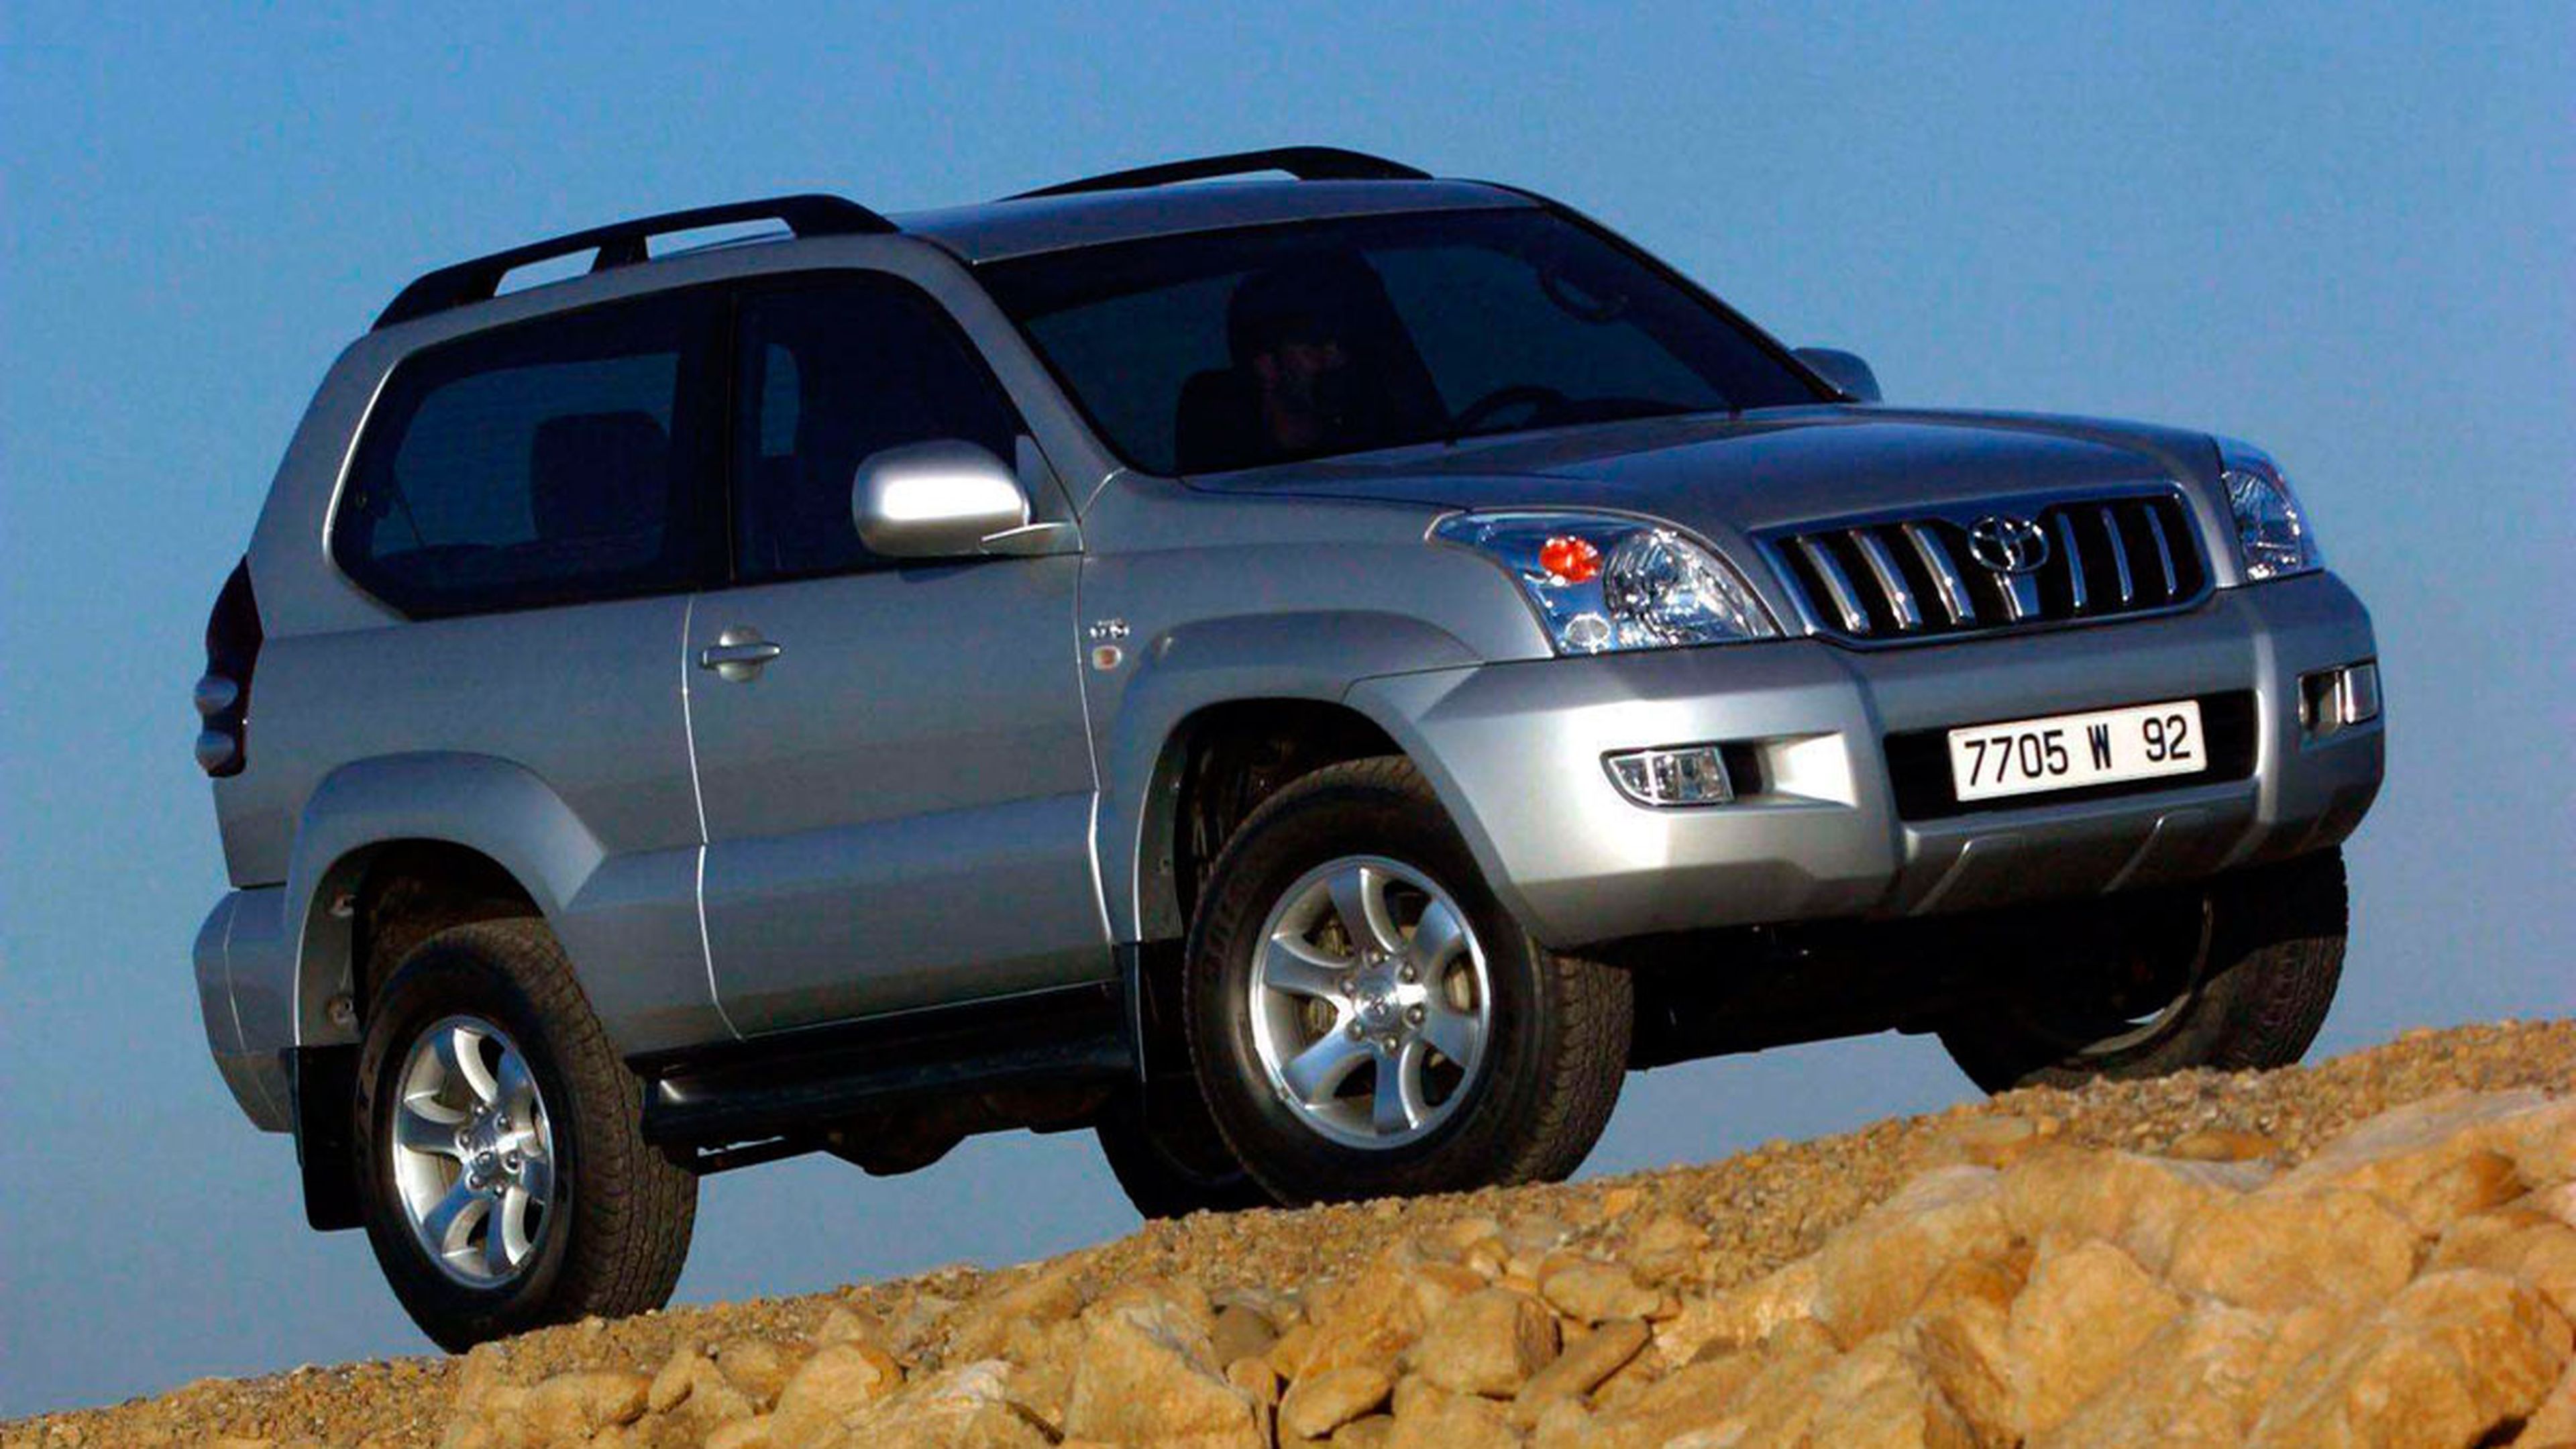 Coche de segunda mano: Toyota Land Cruiser 2003